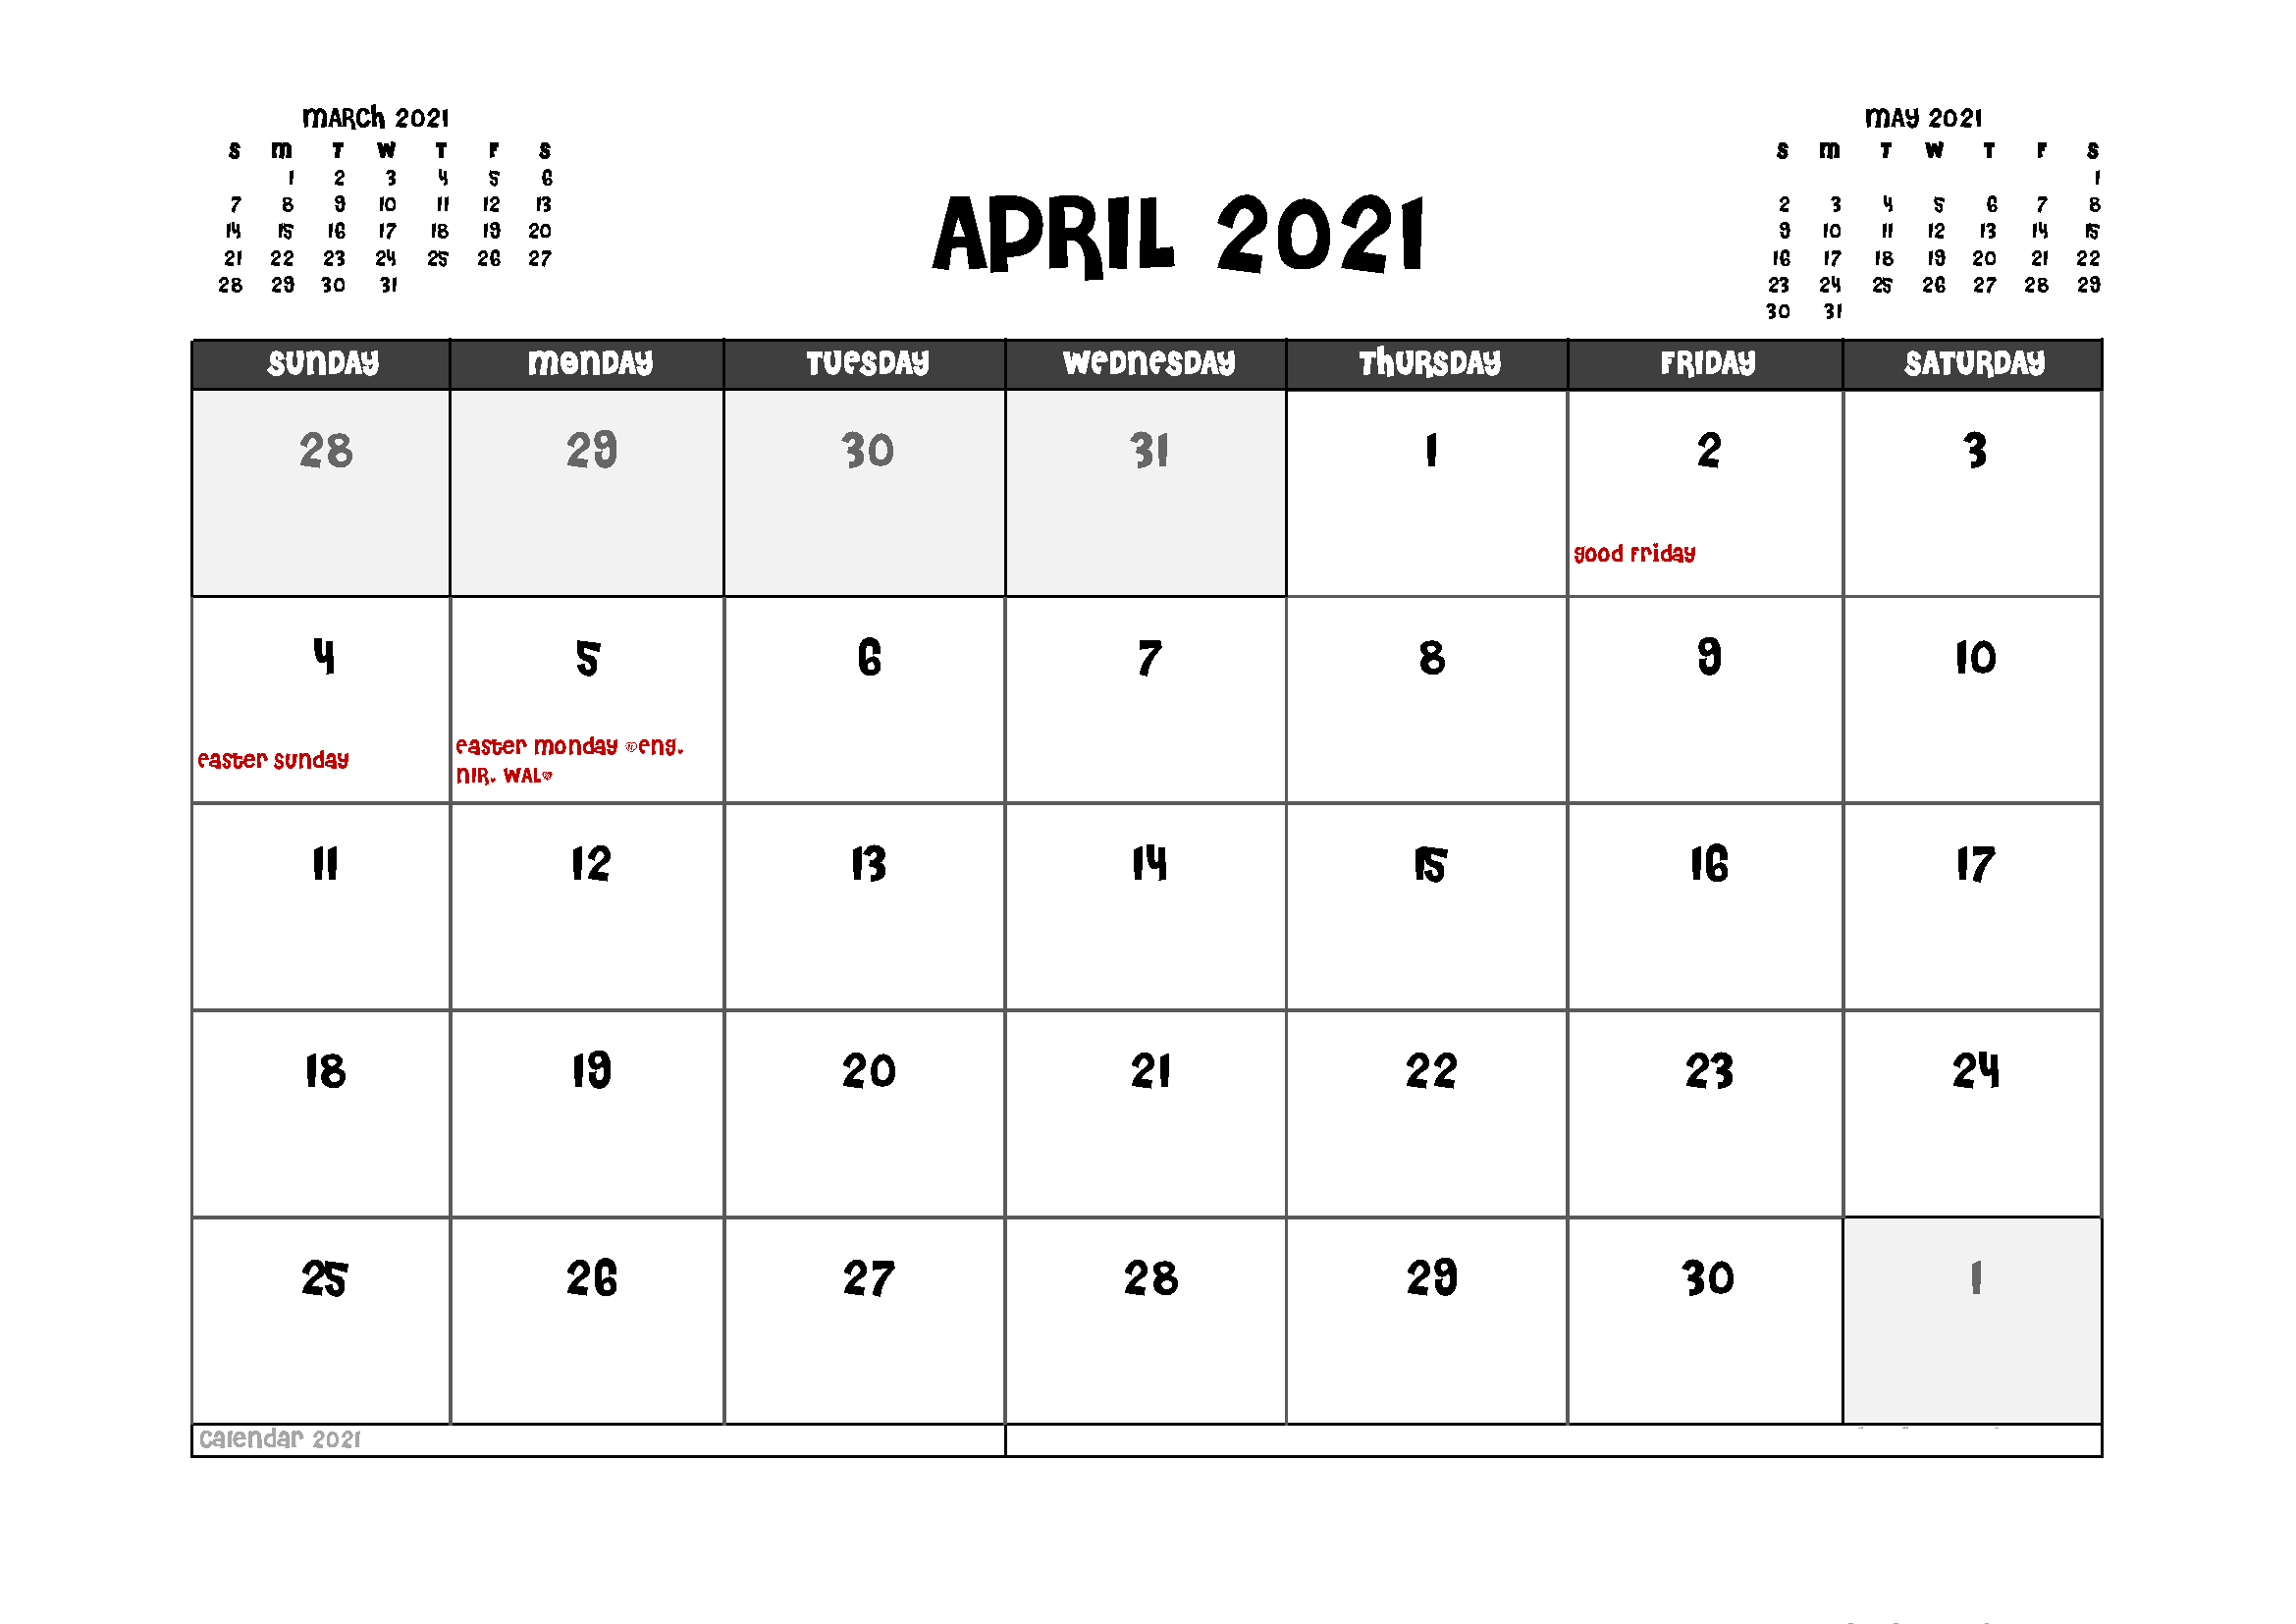 2022 Calendar With Bank Holidays Uk - Twontow-Uk Bank Holiday Calendar 2022